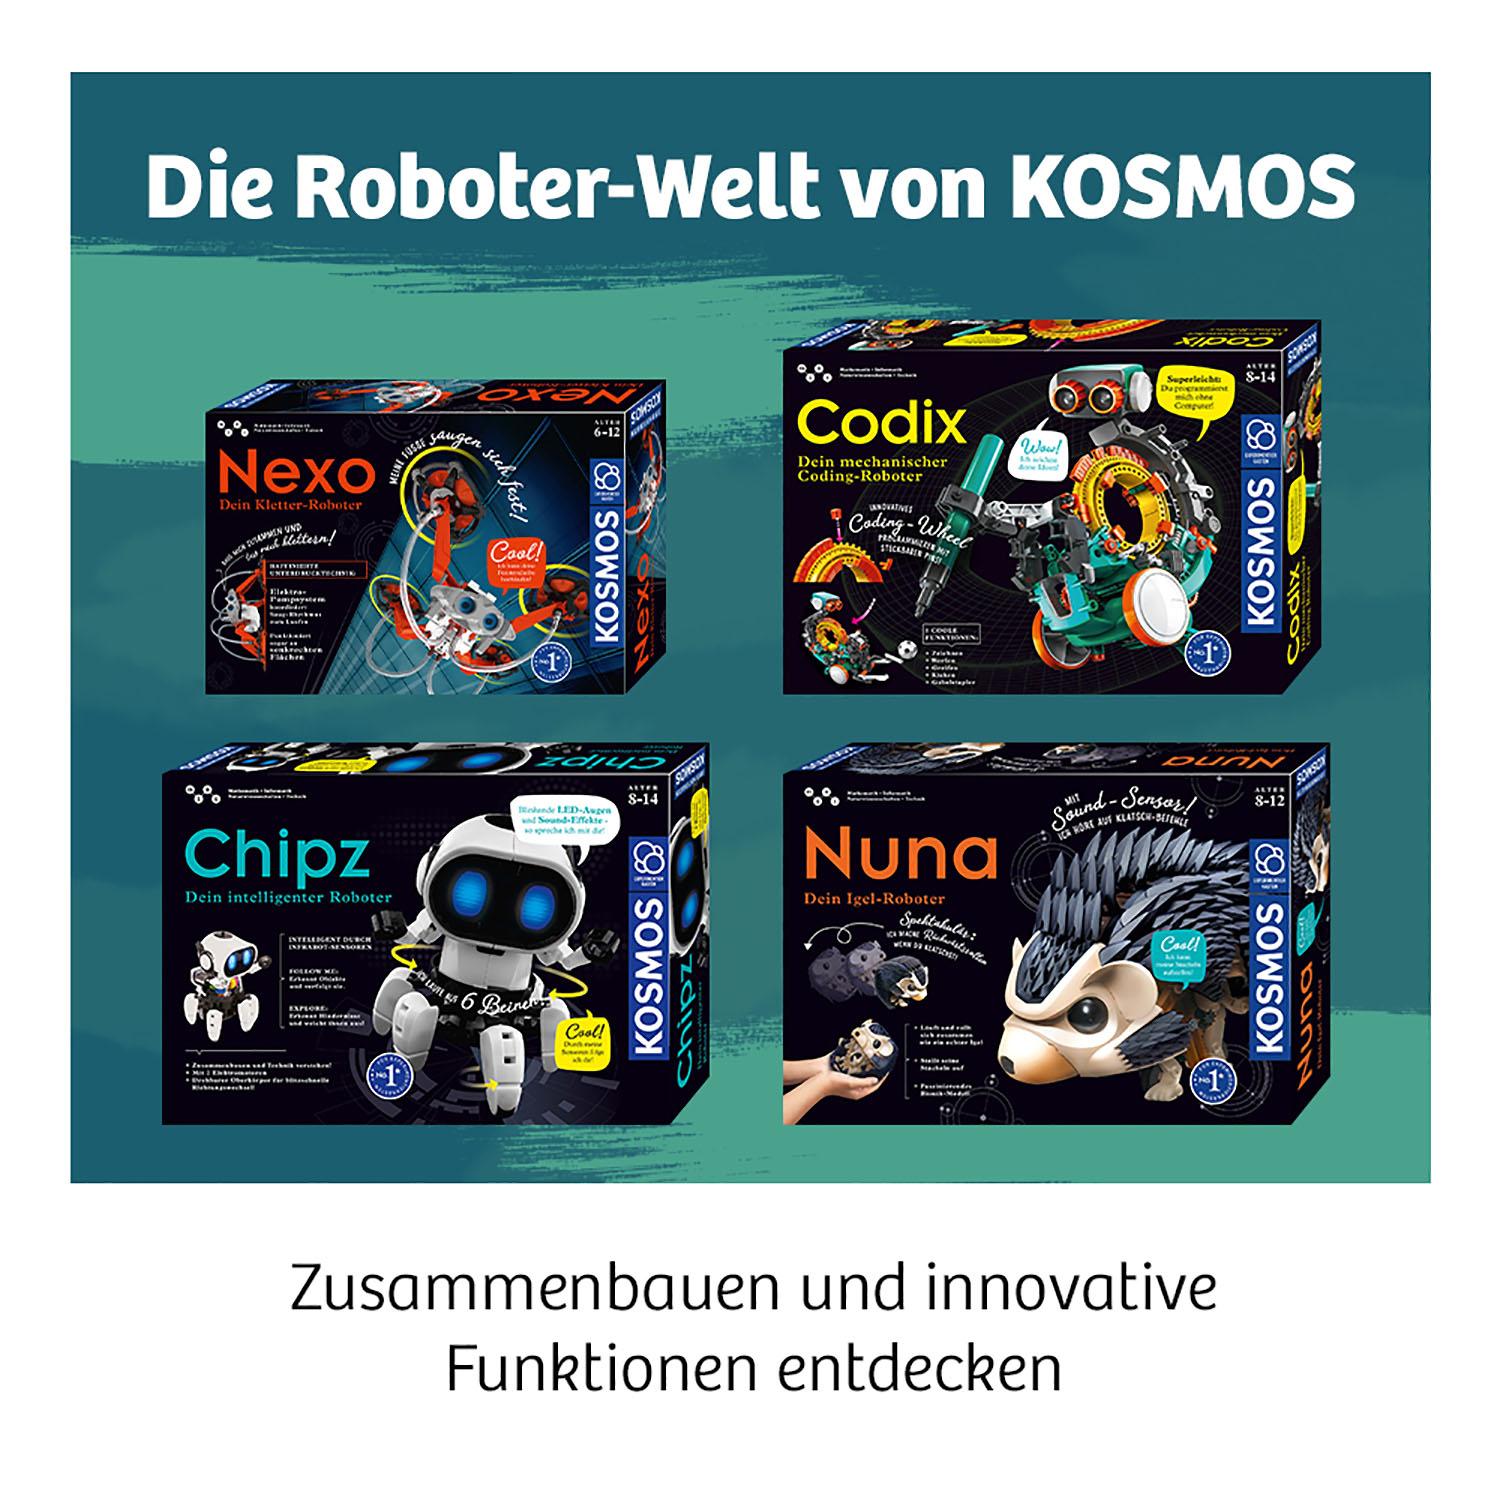 Folgt Bewegungen Dein Intelligenter Roboter Chipz Mit 6 Beinen Details about   Kosmos Wei 